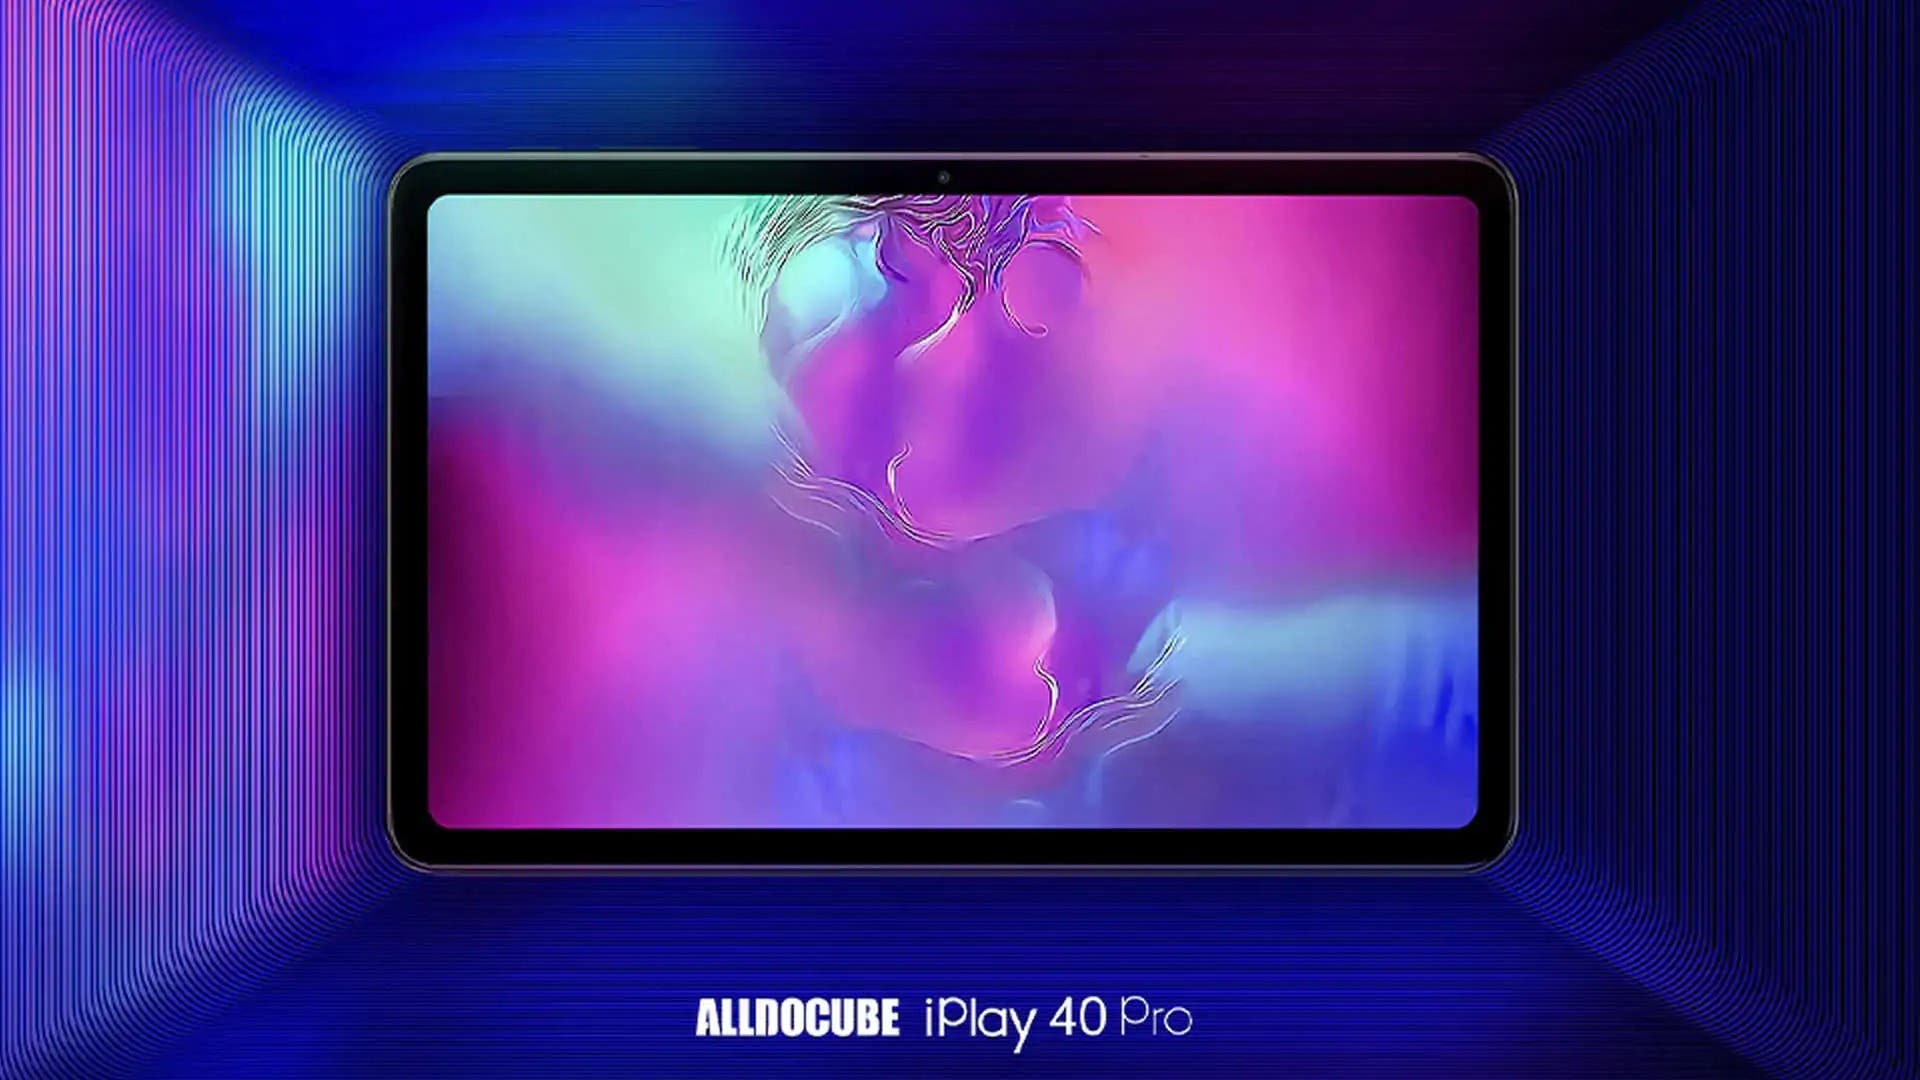 ALLDOCUBE iPlay 40 Pro